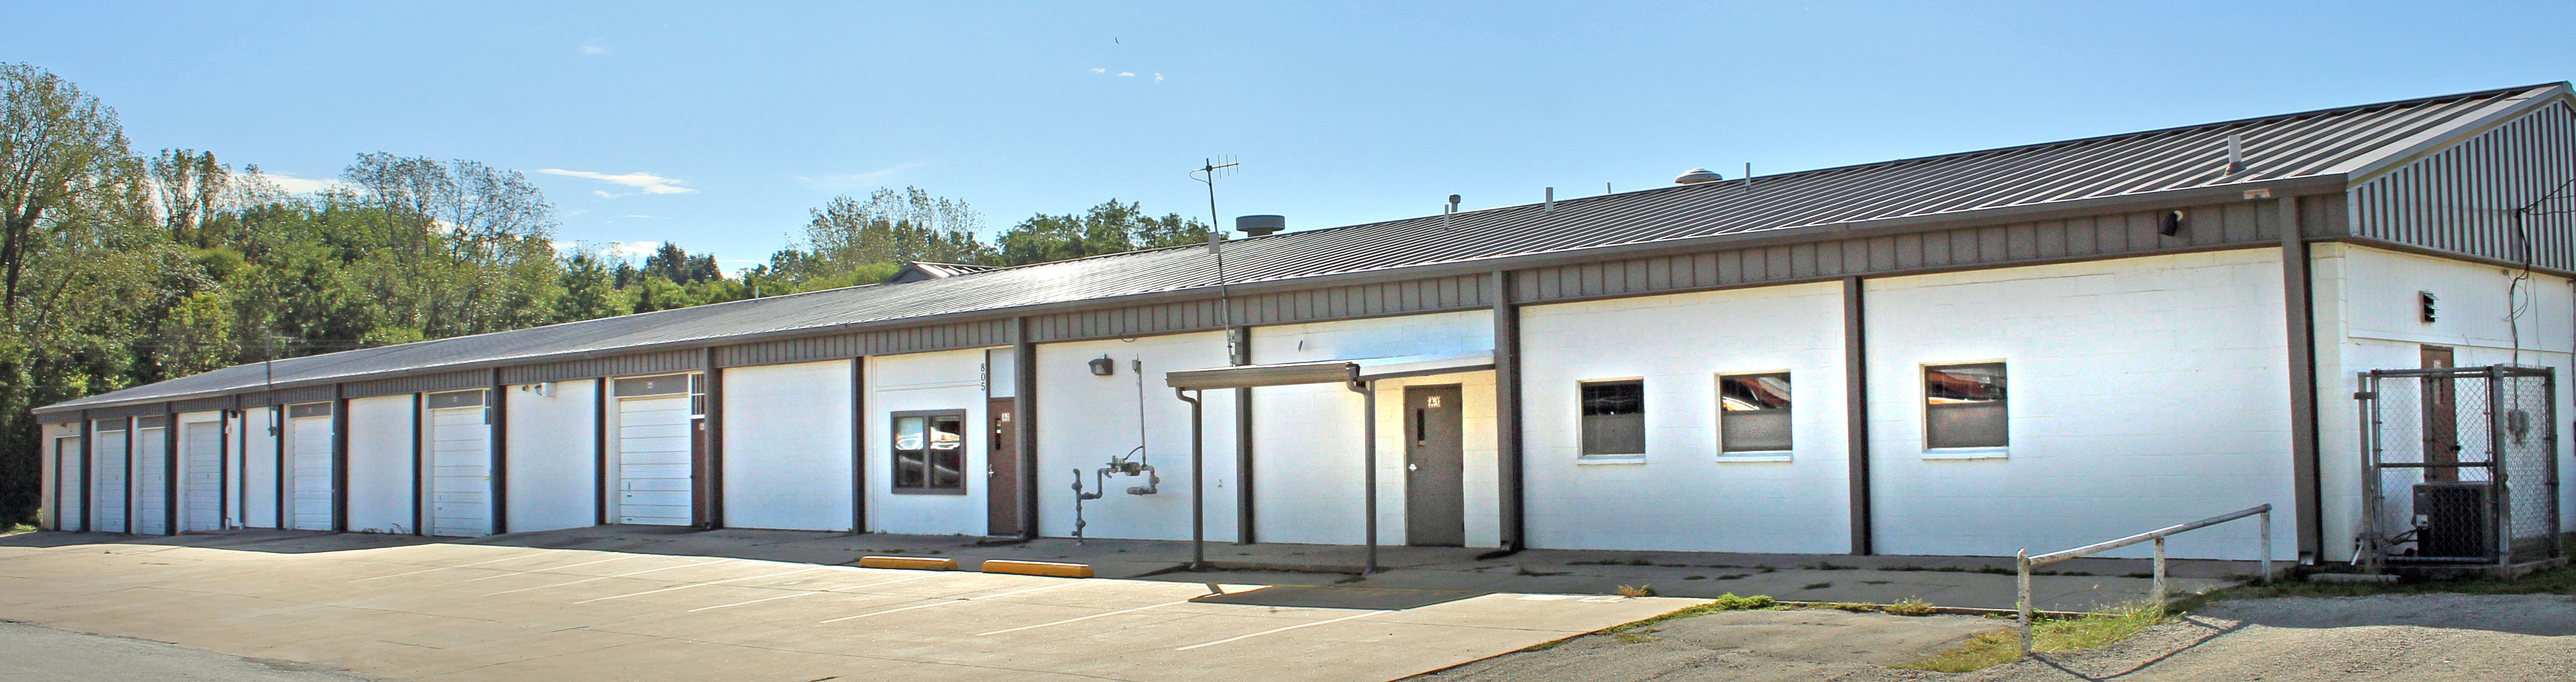 Shawnee facility